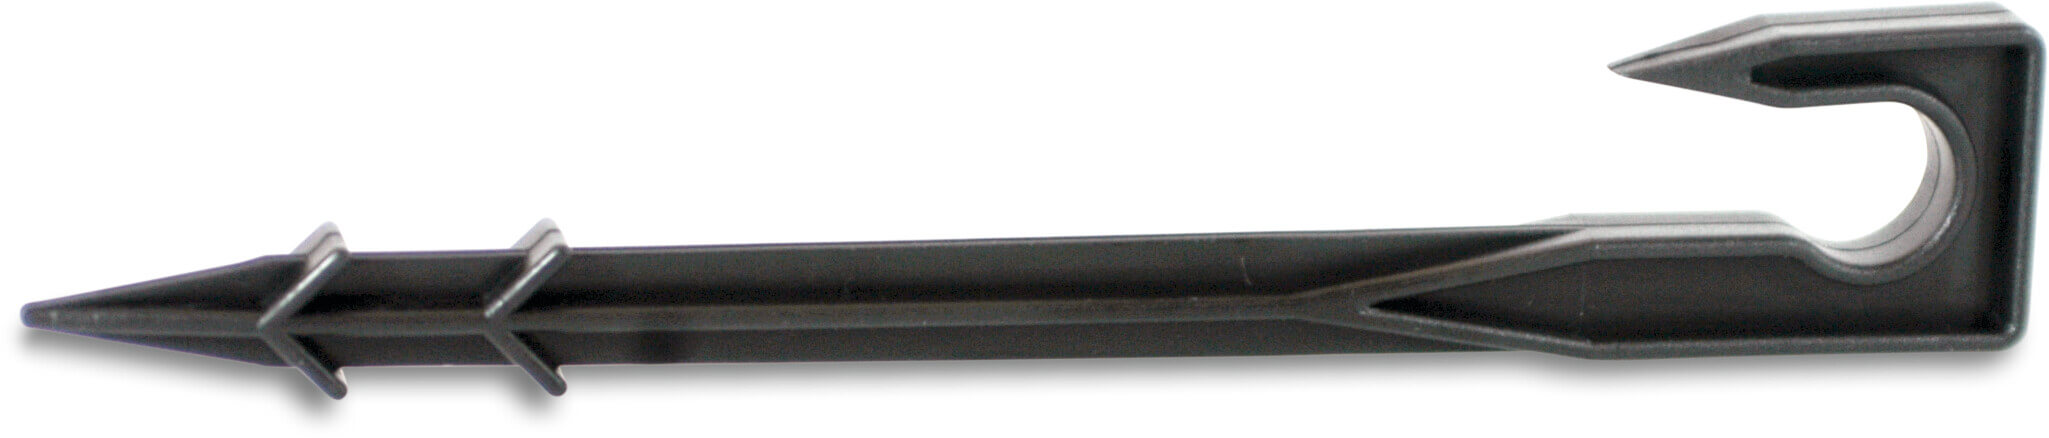 Tie-Down stake plastic 16 mm 15cm black